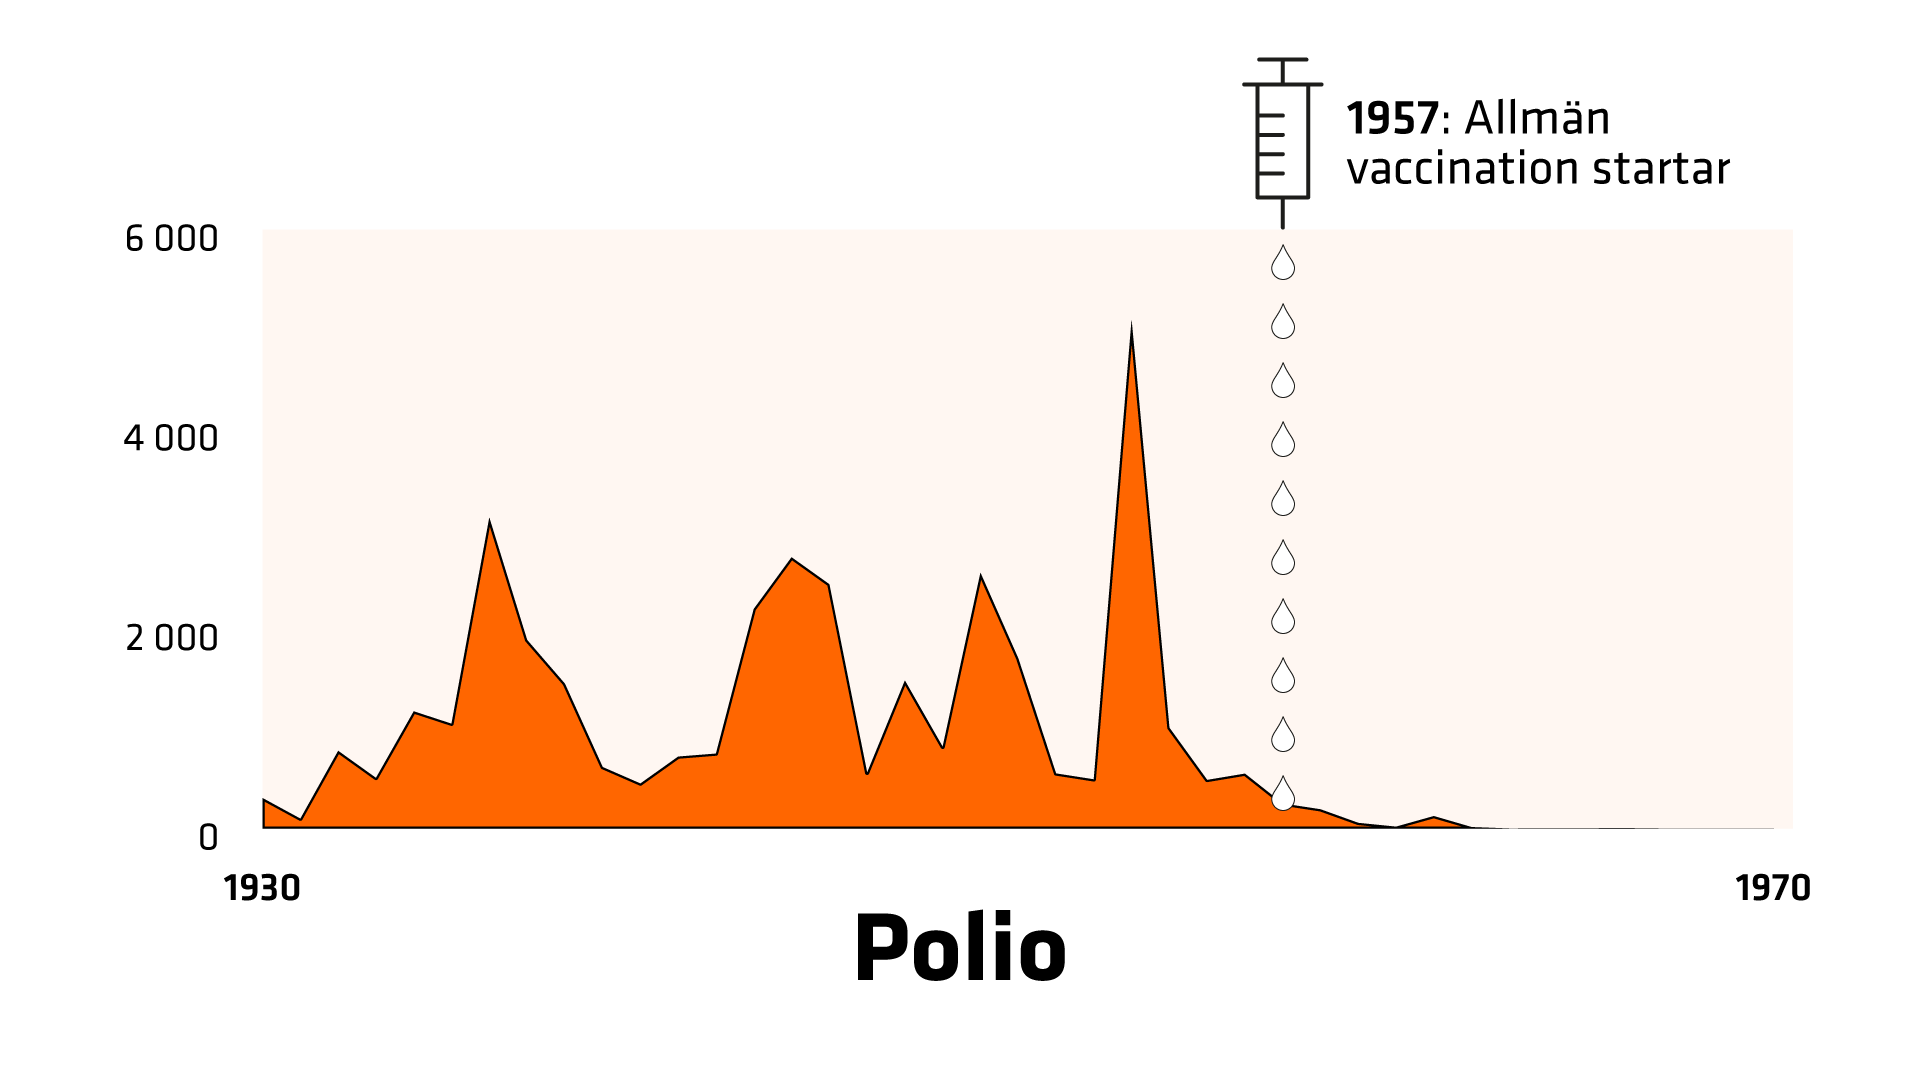 1930 registreras 304 fall av polio i Sverige. 1953 registreras 5 090 fall. 1957 startar allmän vaccination. Då är antalet fall 250. 1970 registreras inga fall av polio i Sverige.